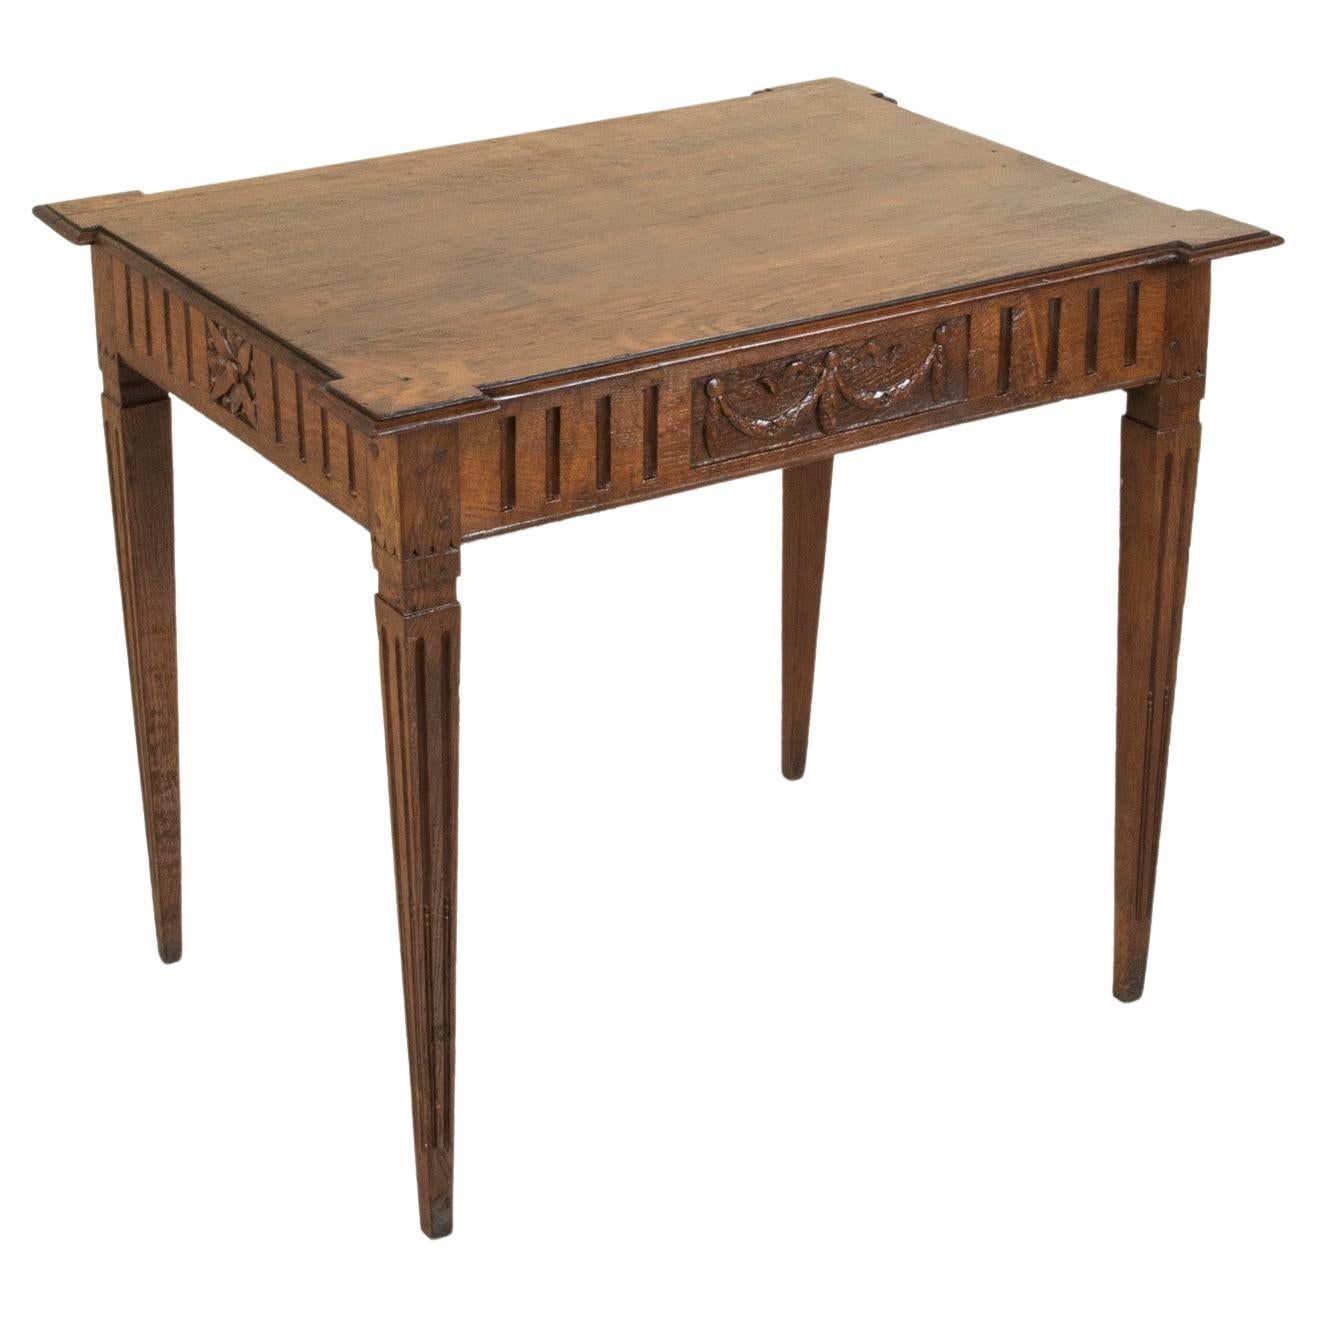 Début du 19ème siècle, table à écrire ou table d'appoint en Oak de style Louis XVI français